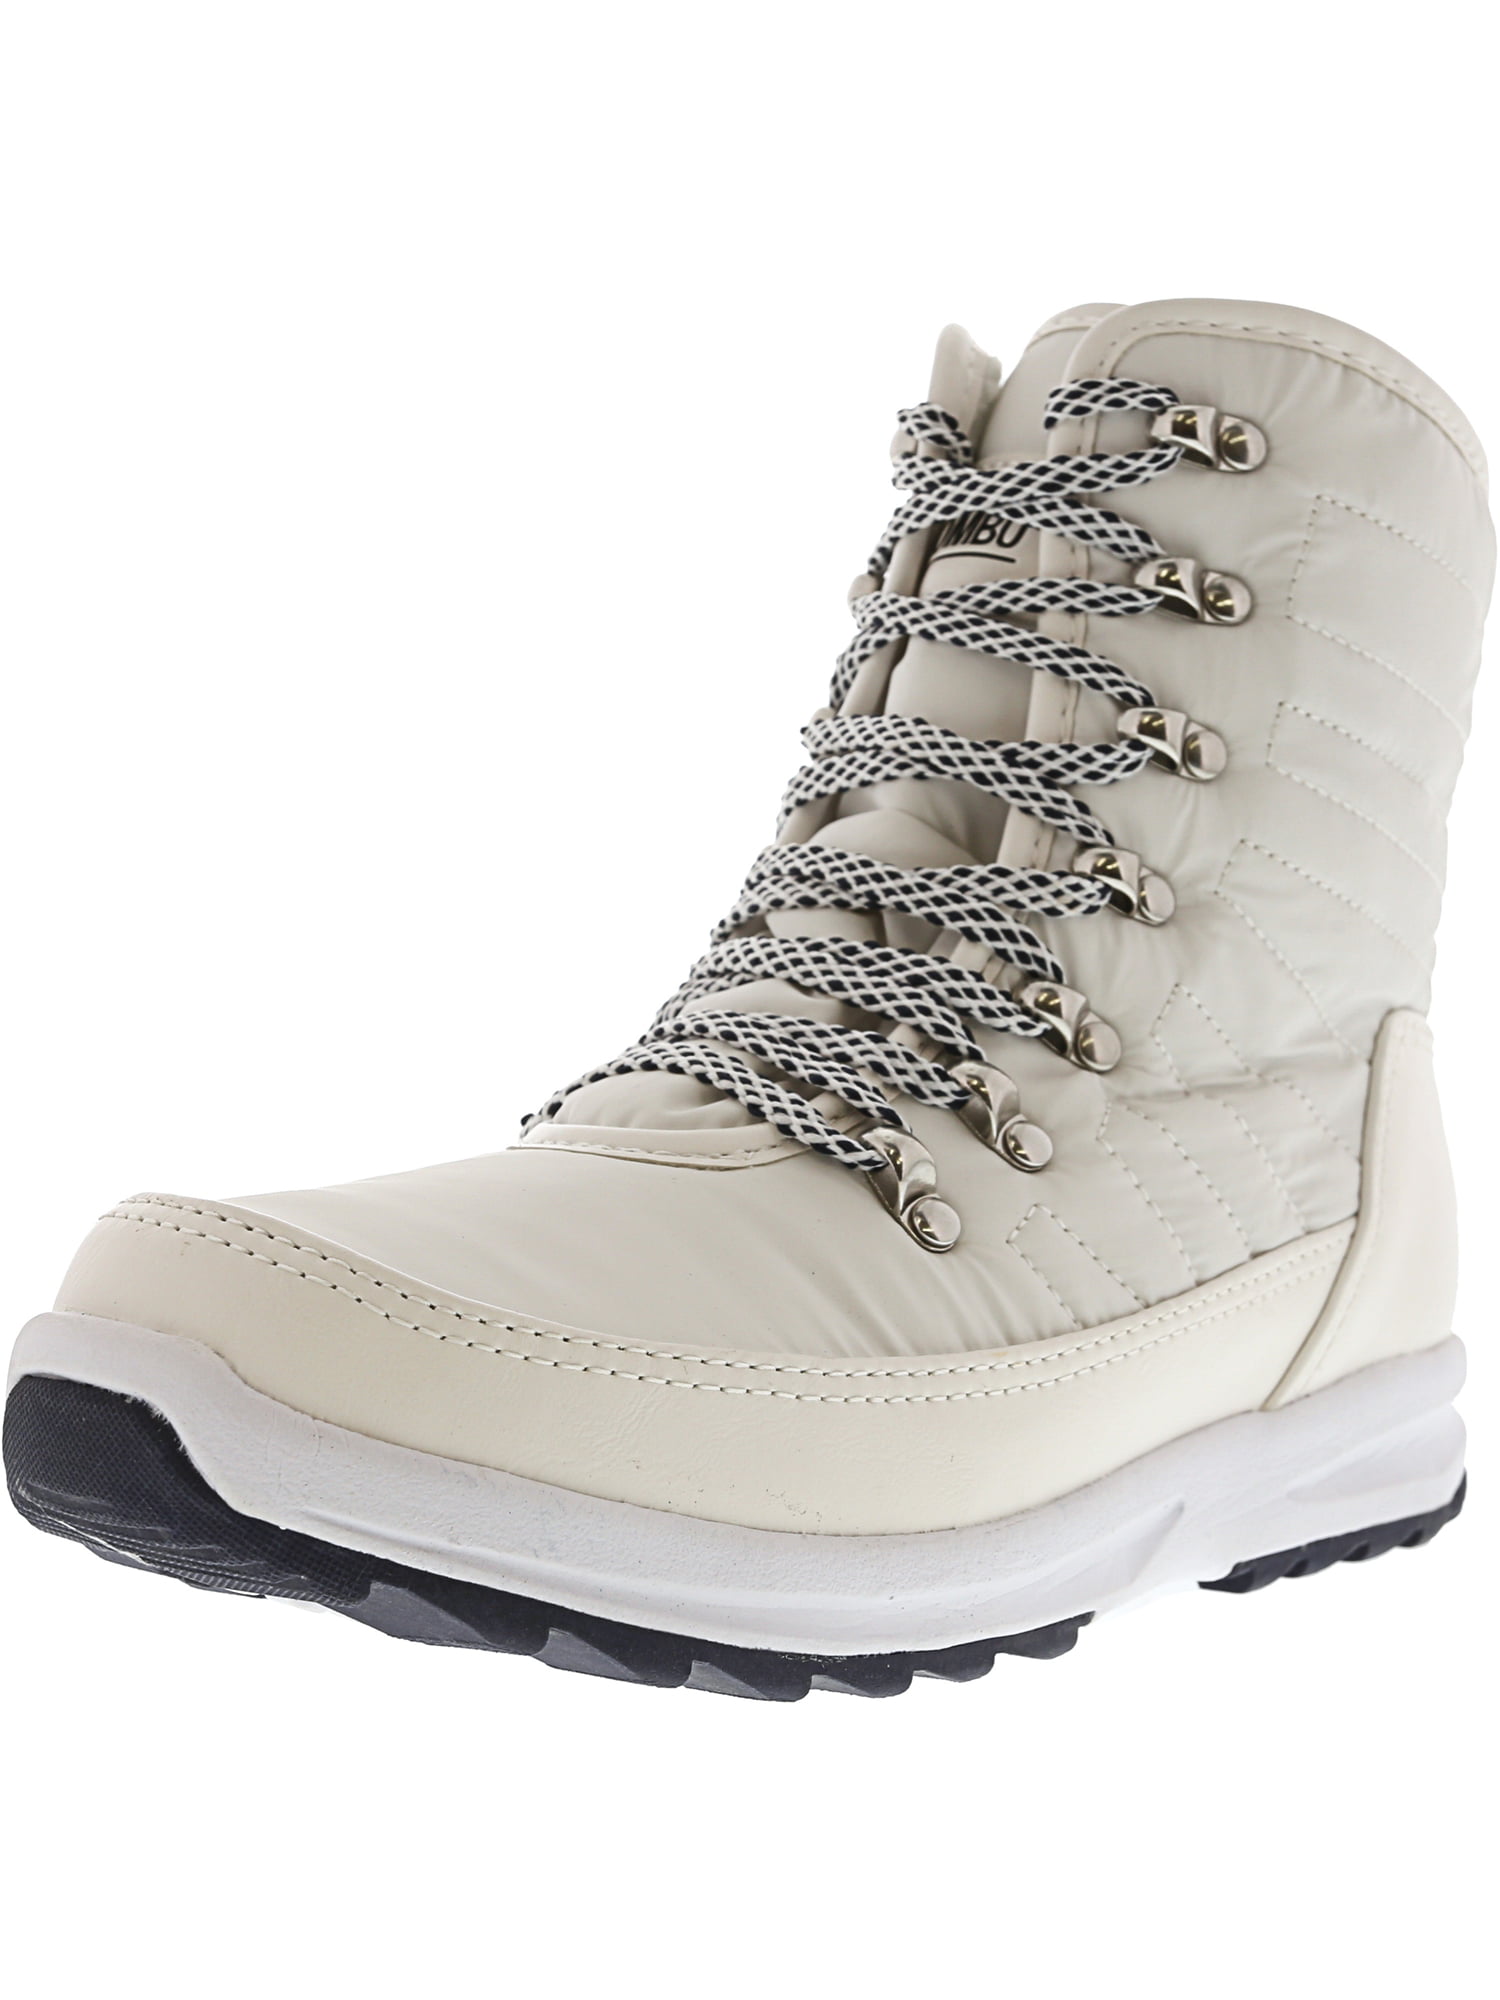 khombu white boots